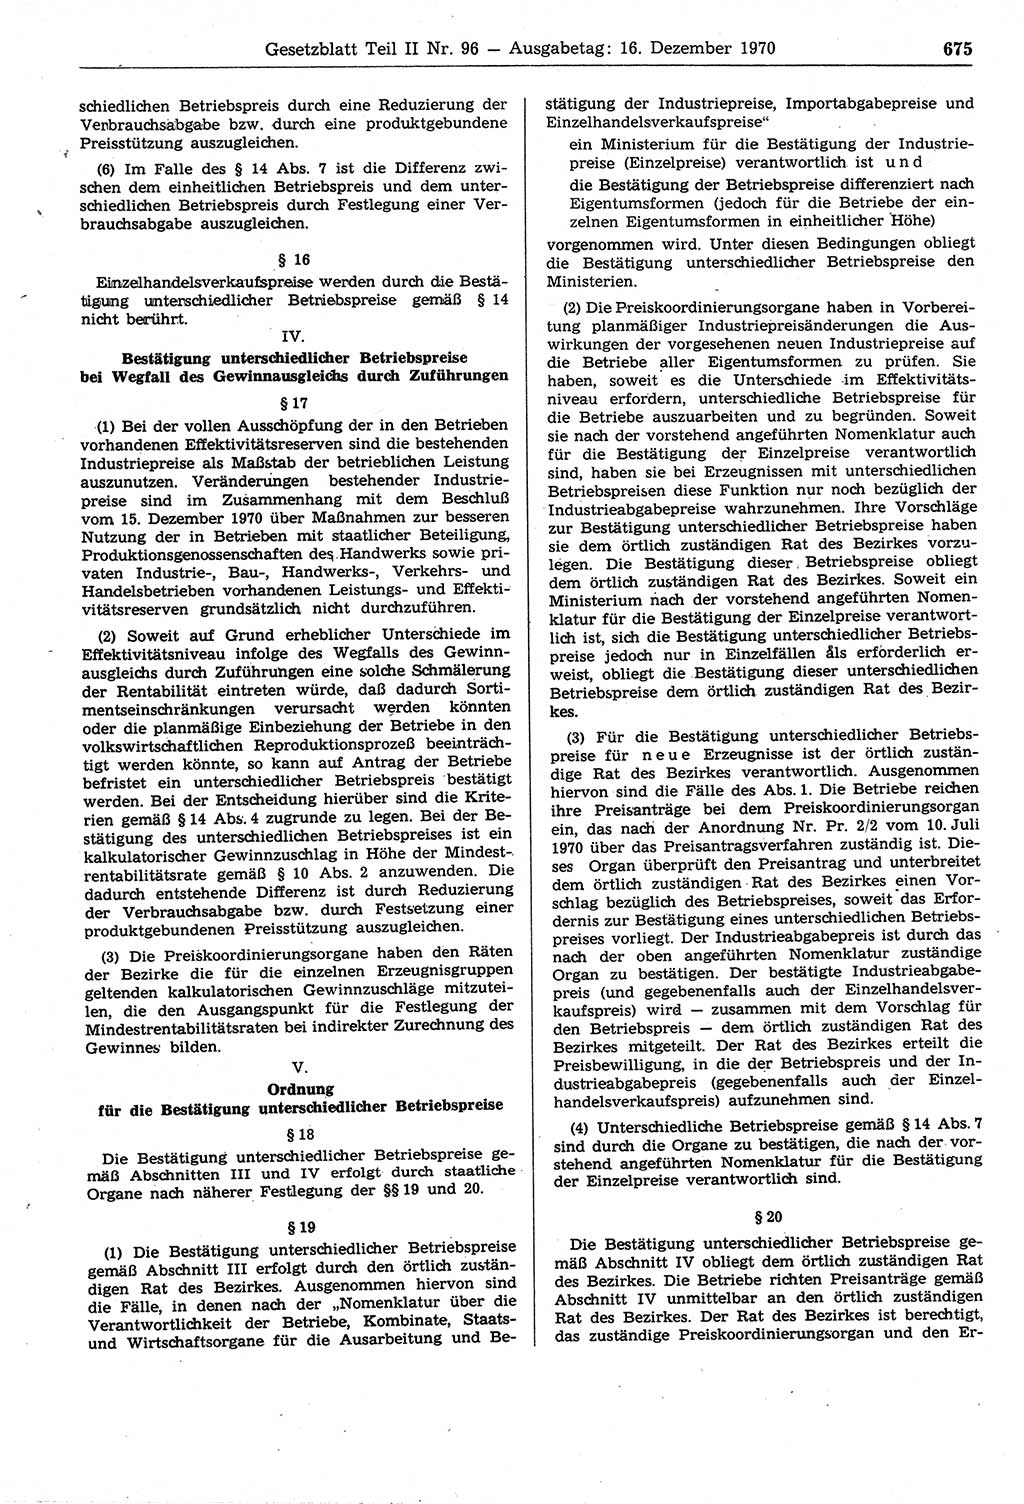 Gesetzblatt (GBl.) der Deutschen Demokratischen Republik (DDR) Teil ⅠⅠ 1970, Seite 675 (GBl. DDR ⅠⅠ 1970, S. 675)